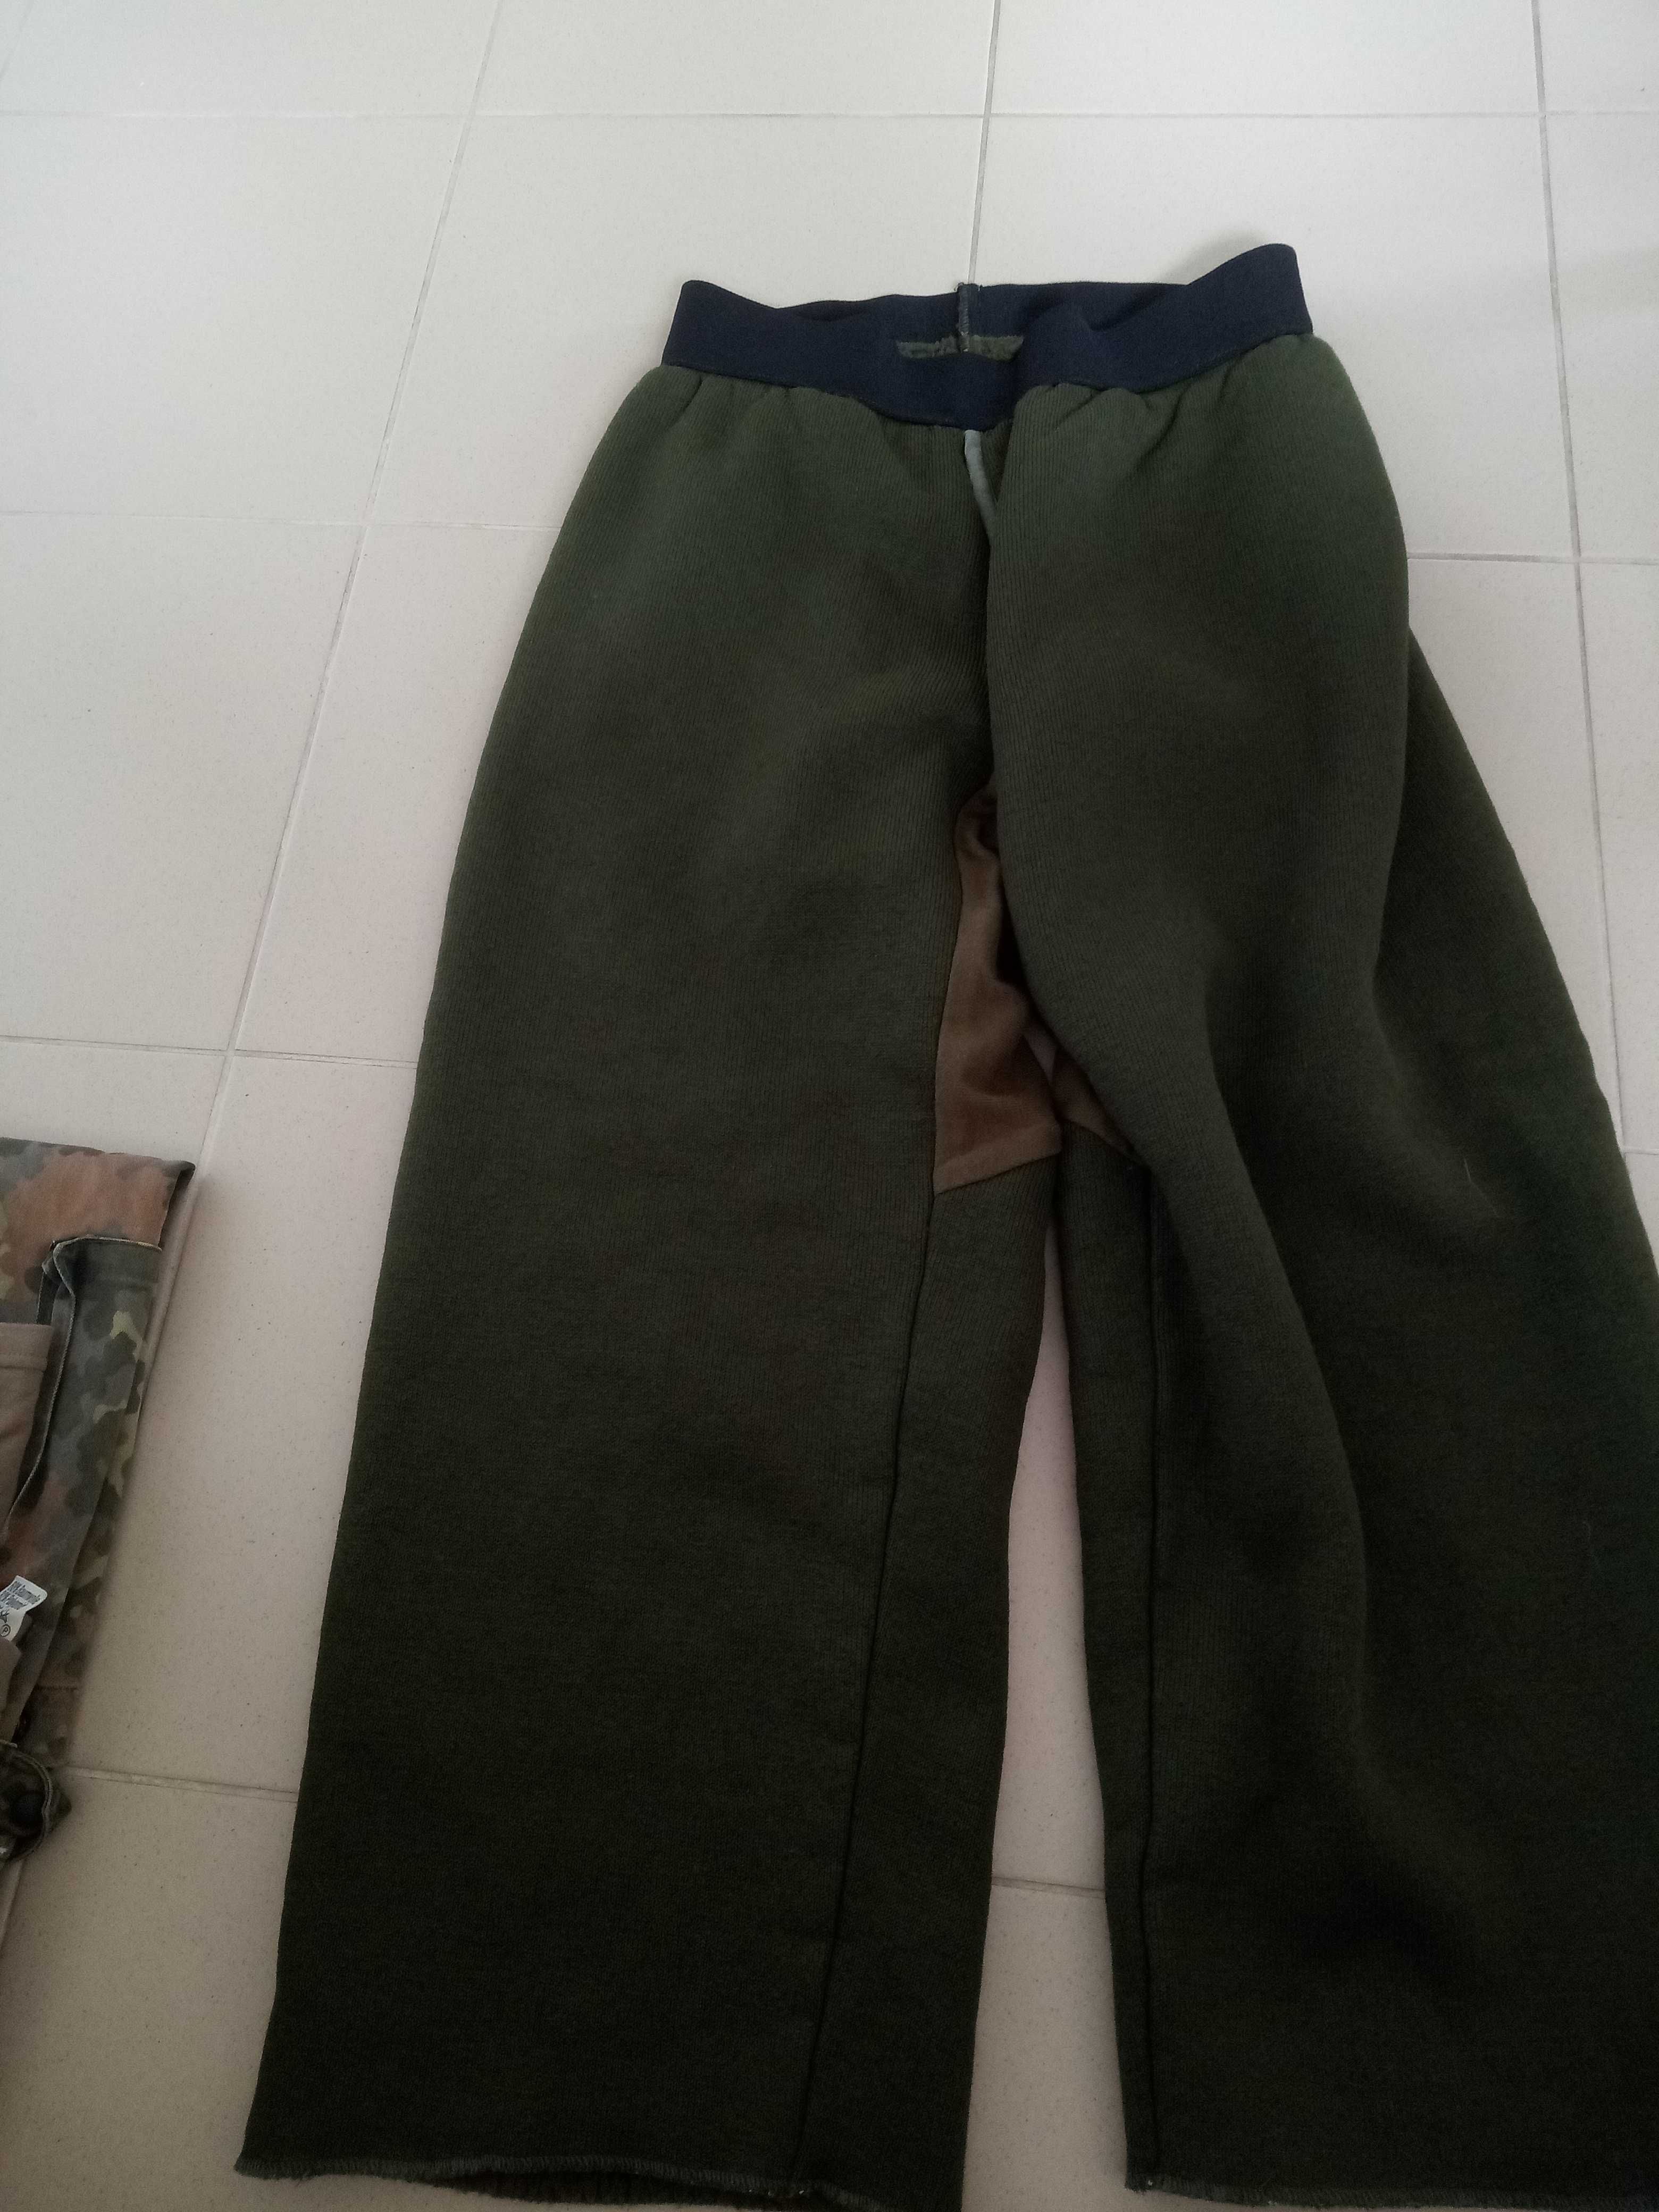 zestaw bundeswehr spodnie ocieplaczex2 koszule x2 męskie lub damskie